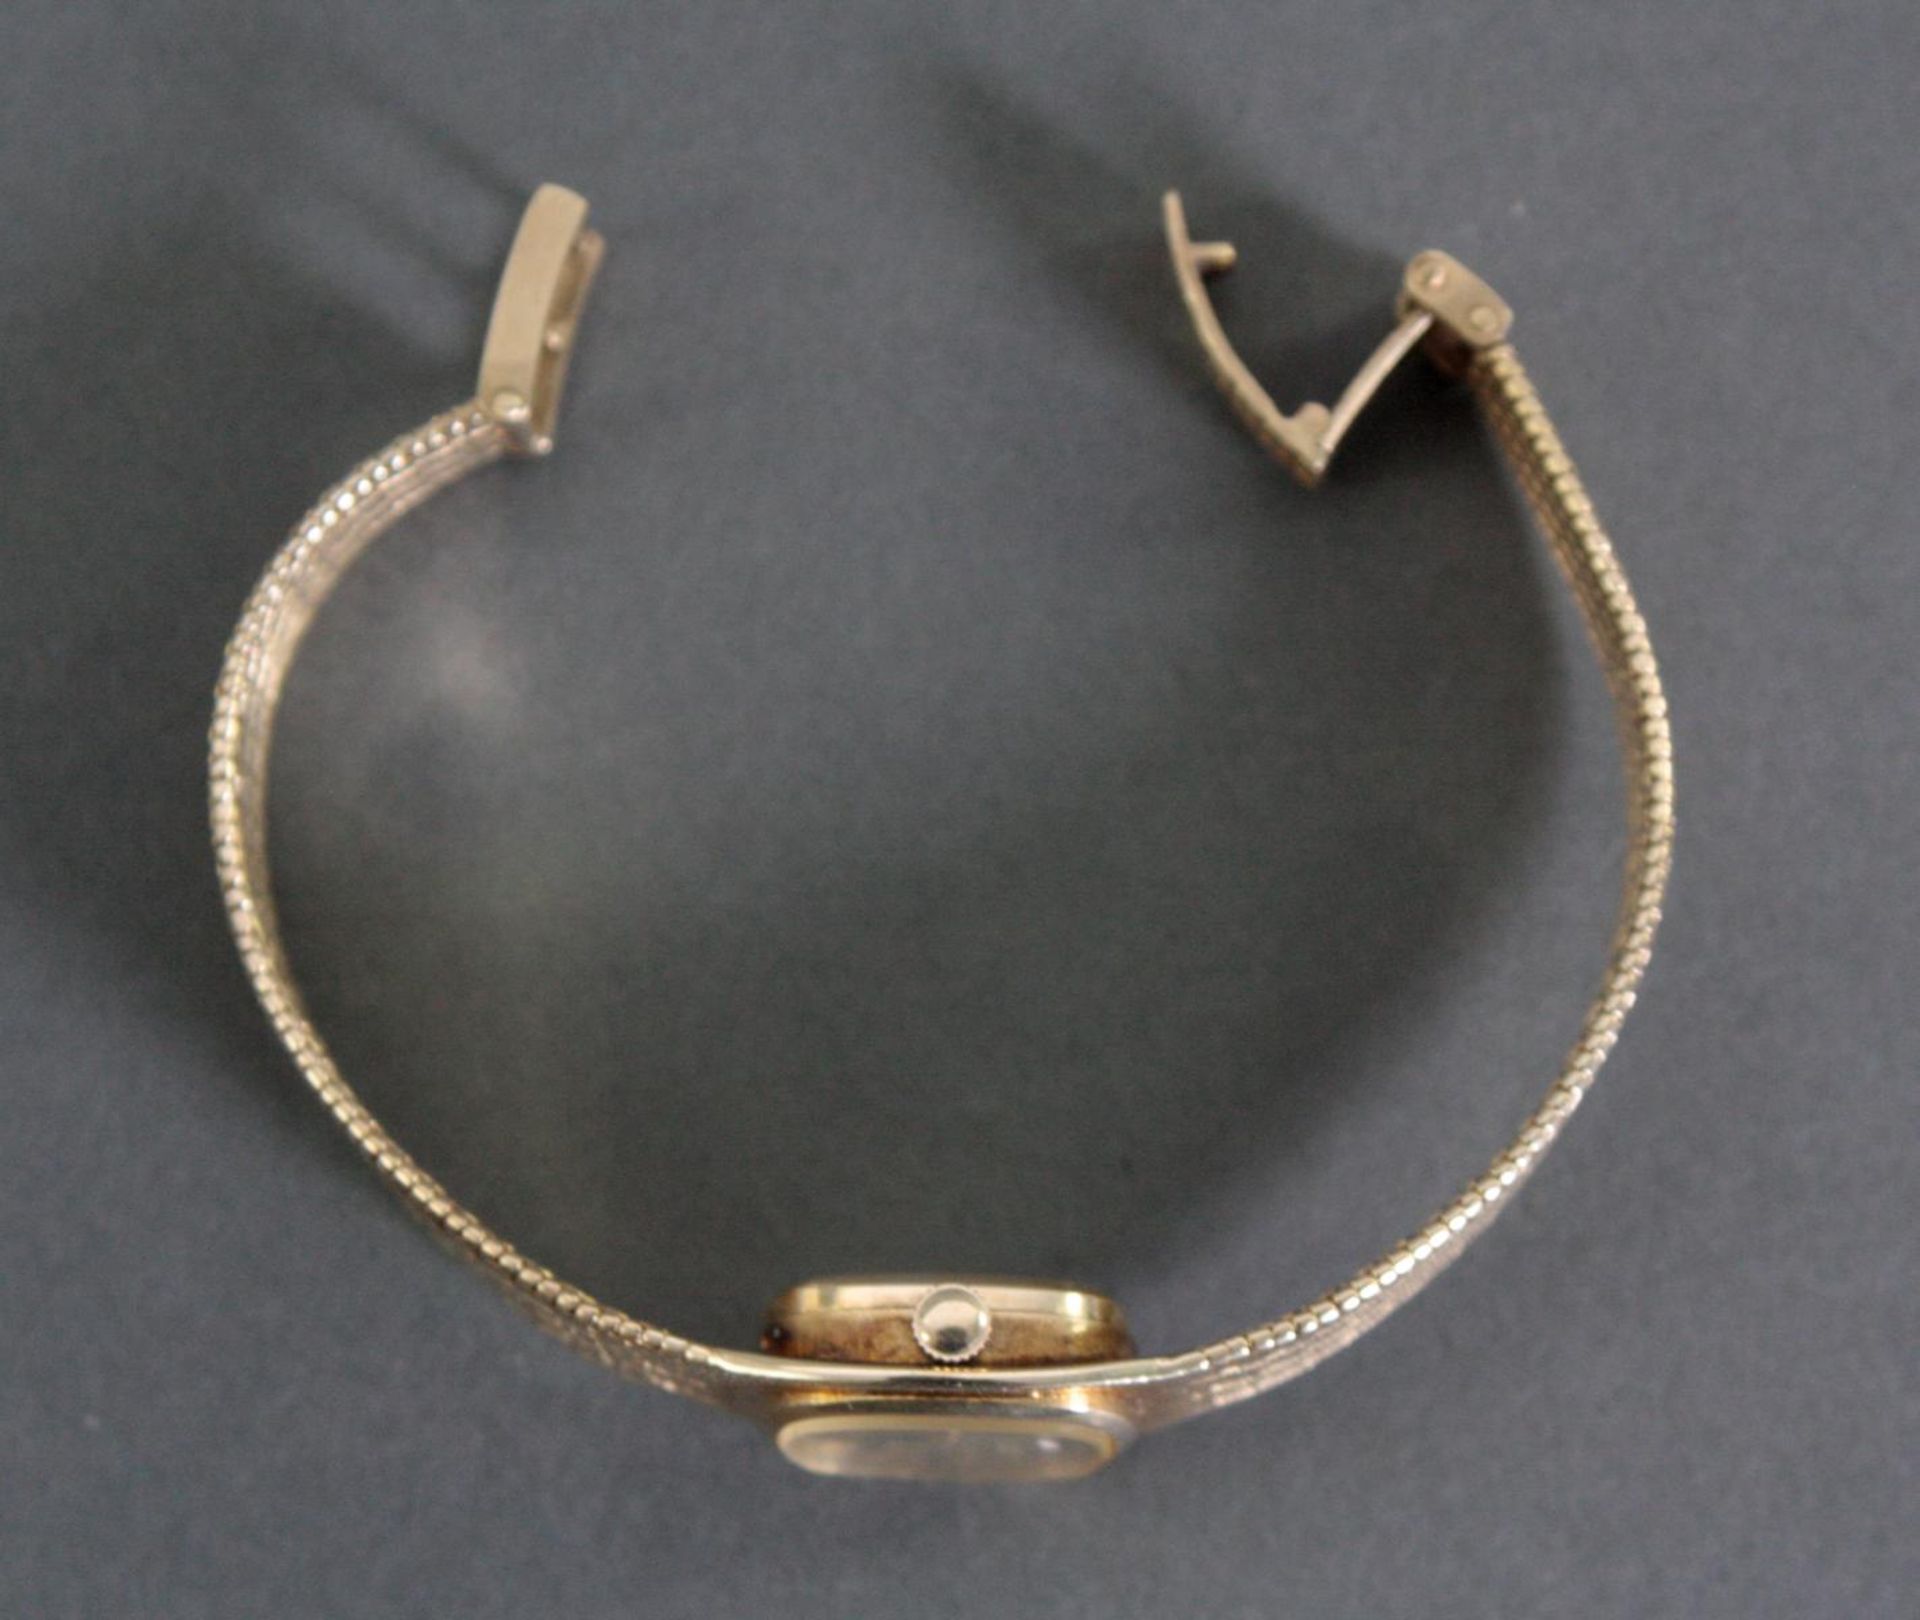 Favor Damenarmbanduhr, 14 Karat GelbgoldQuarz, Uhrendeckel und Armband gestempelt, ohne Funktion, - Bild 4 aus 4